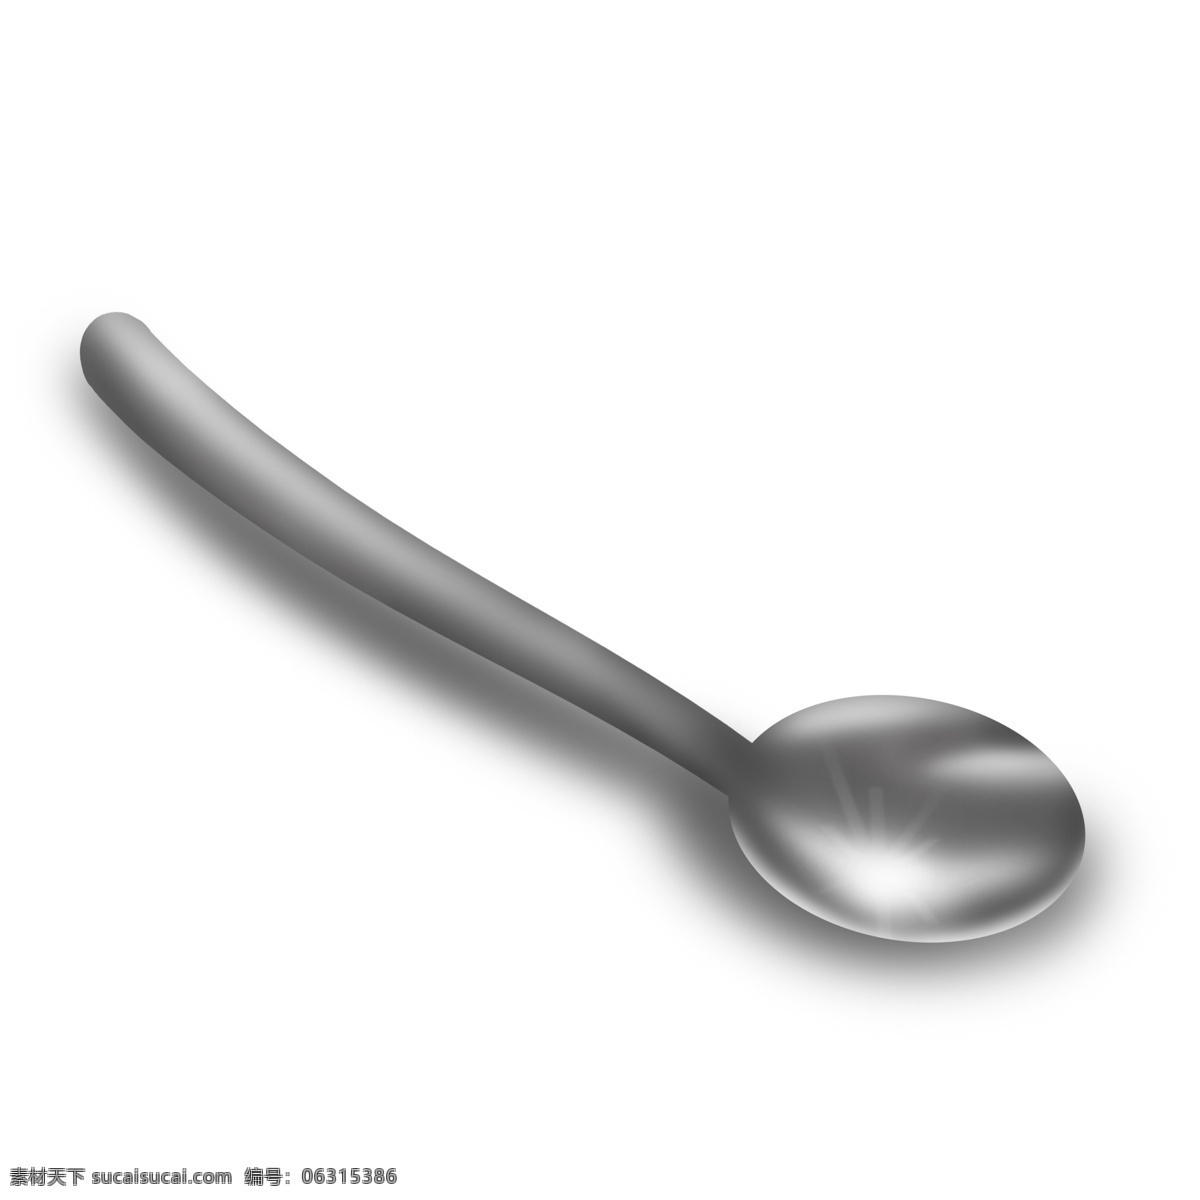 银白色 可爱 精致 反光 勺子 汤勺 灰色 白色 耀眼 餐具 手绘 写实 仿真 真实 用餐